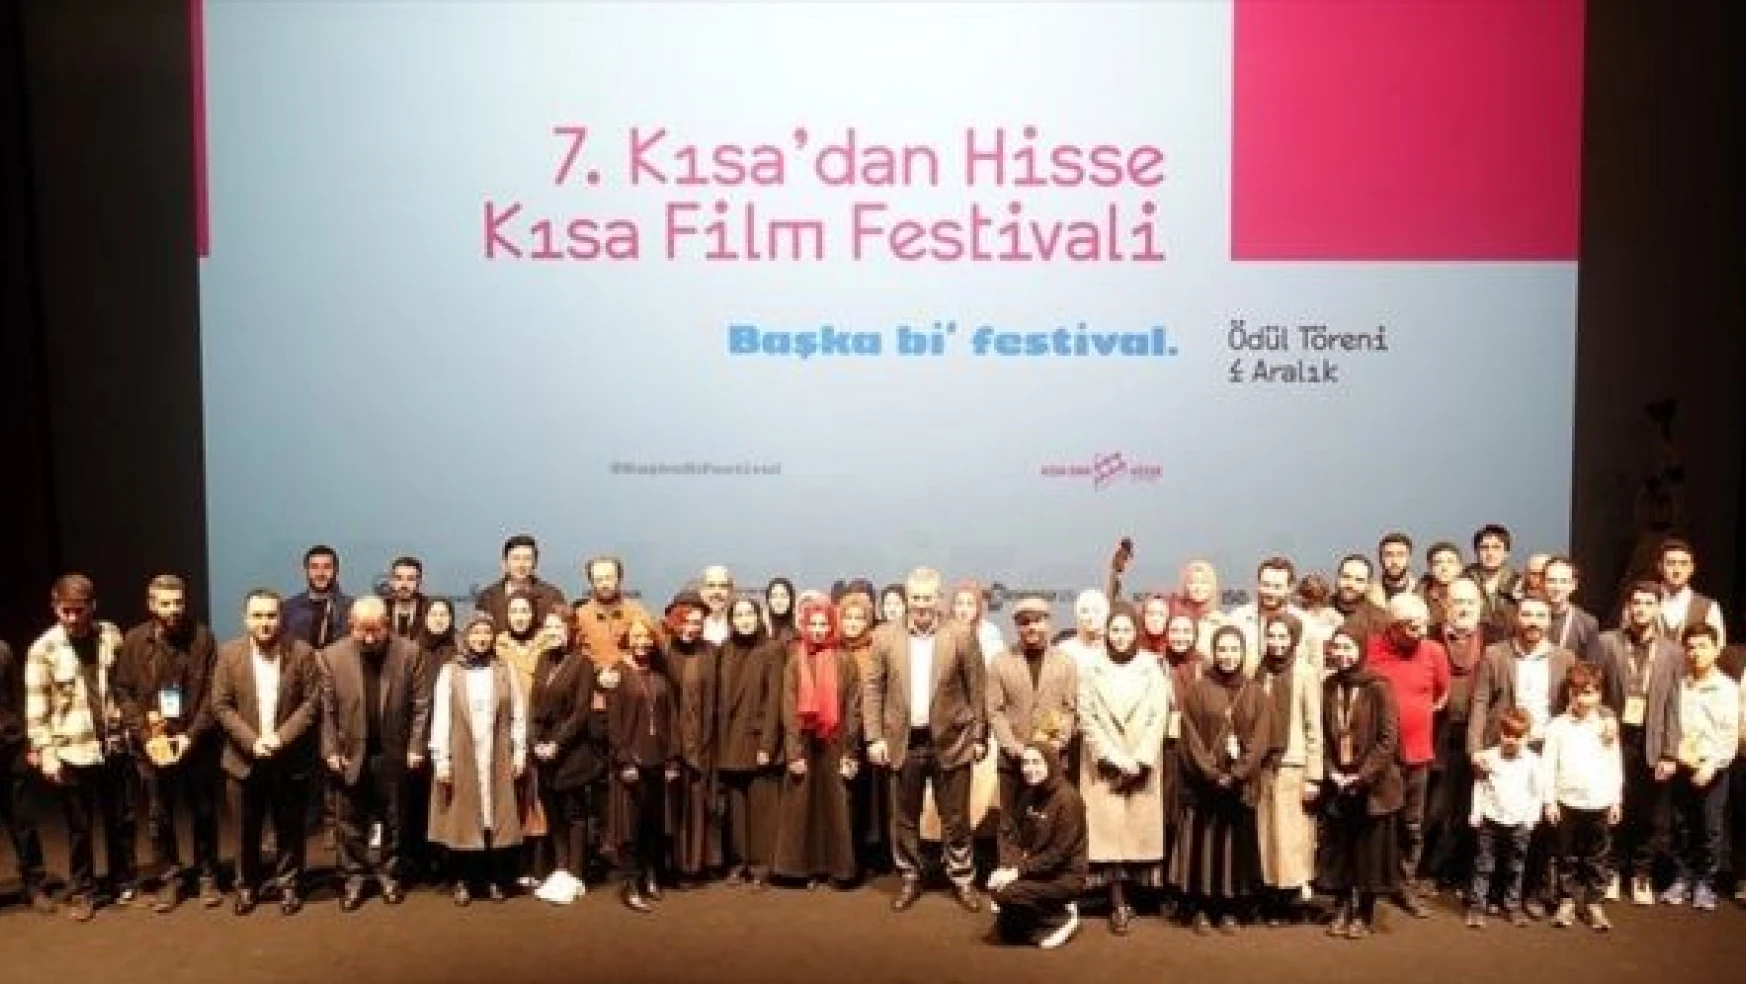 ś. Kısa'dan Hisse Kısa Film Festivali" ödülleri sahiplerini buldu